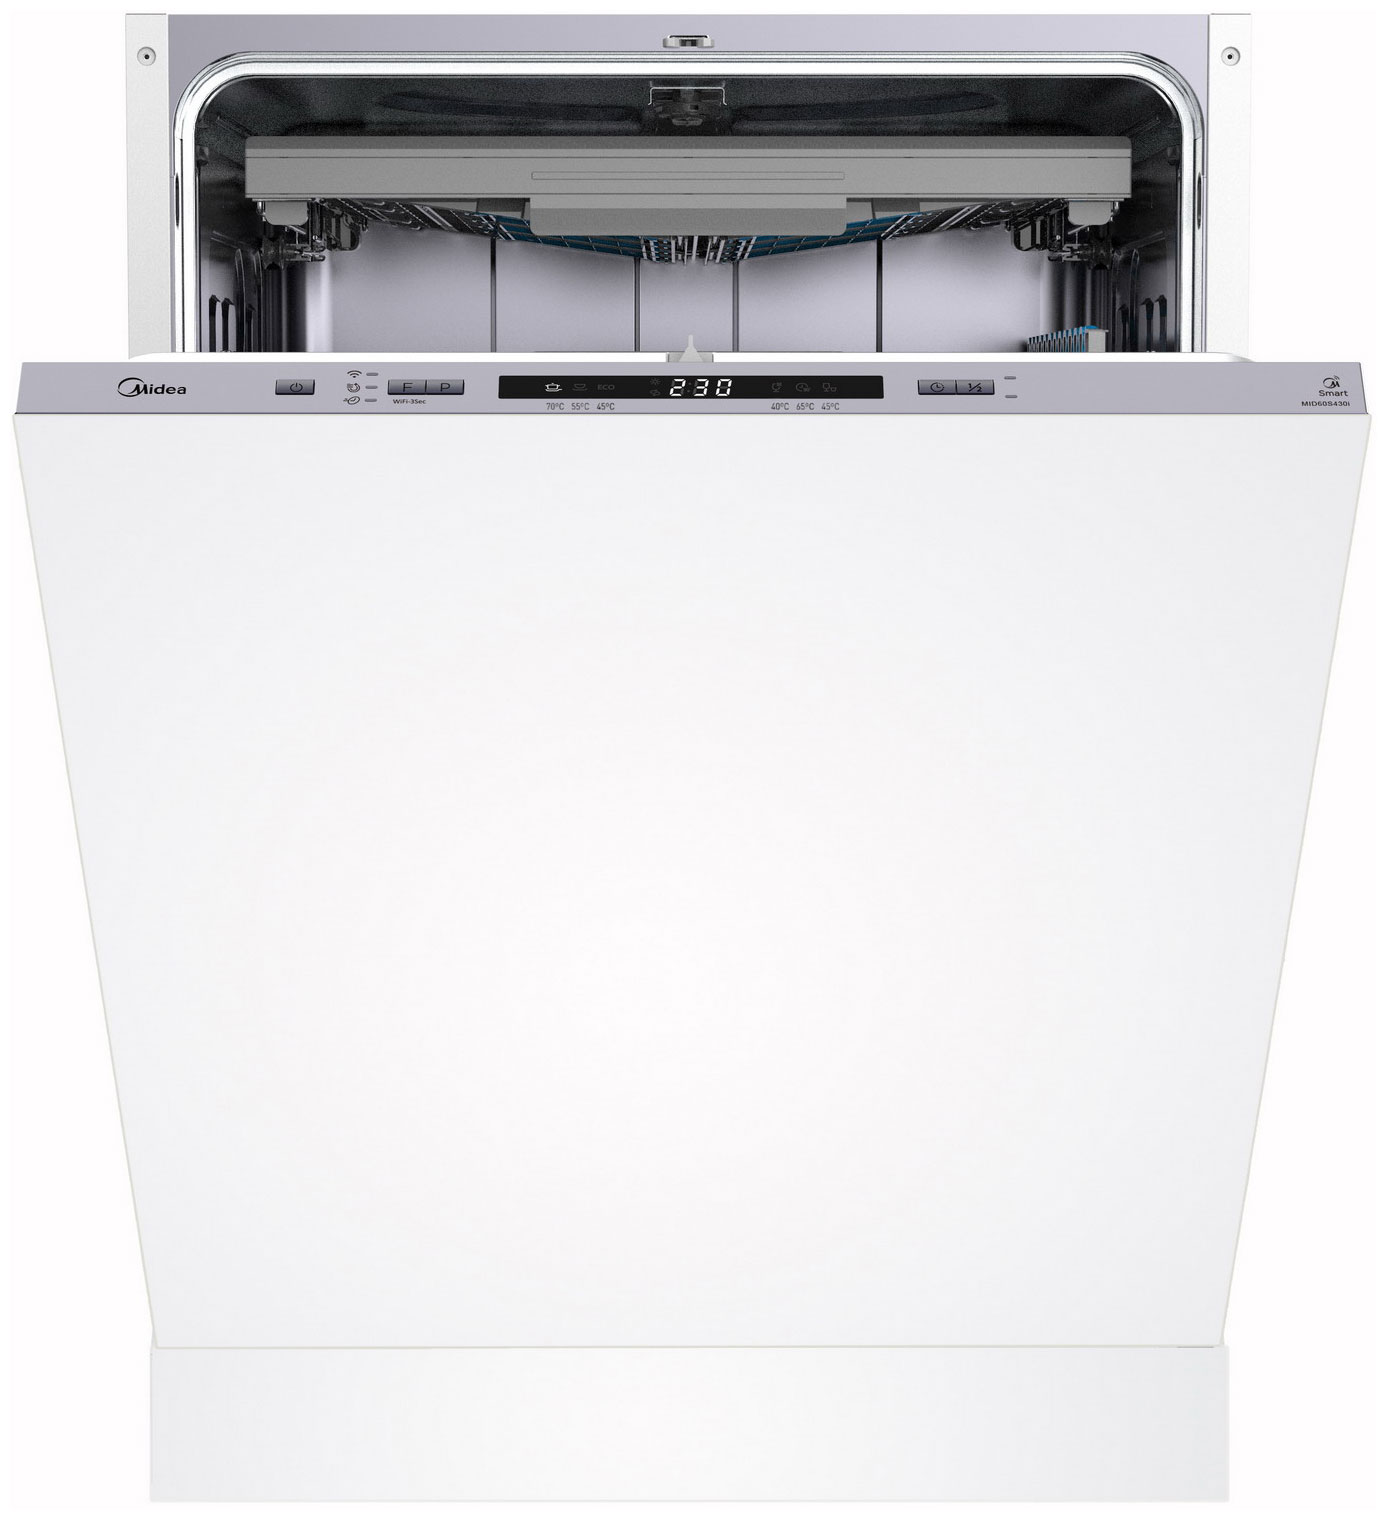 Встраиваемая посудомоечная машина Midea MID60S430i встраиваемая посудомоечная машина midea mid45s340i